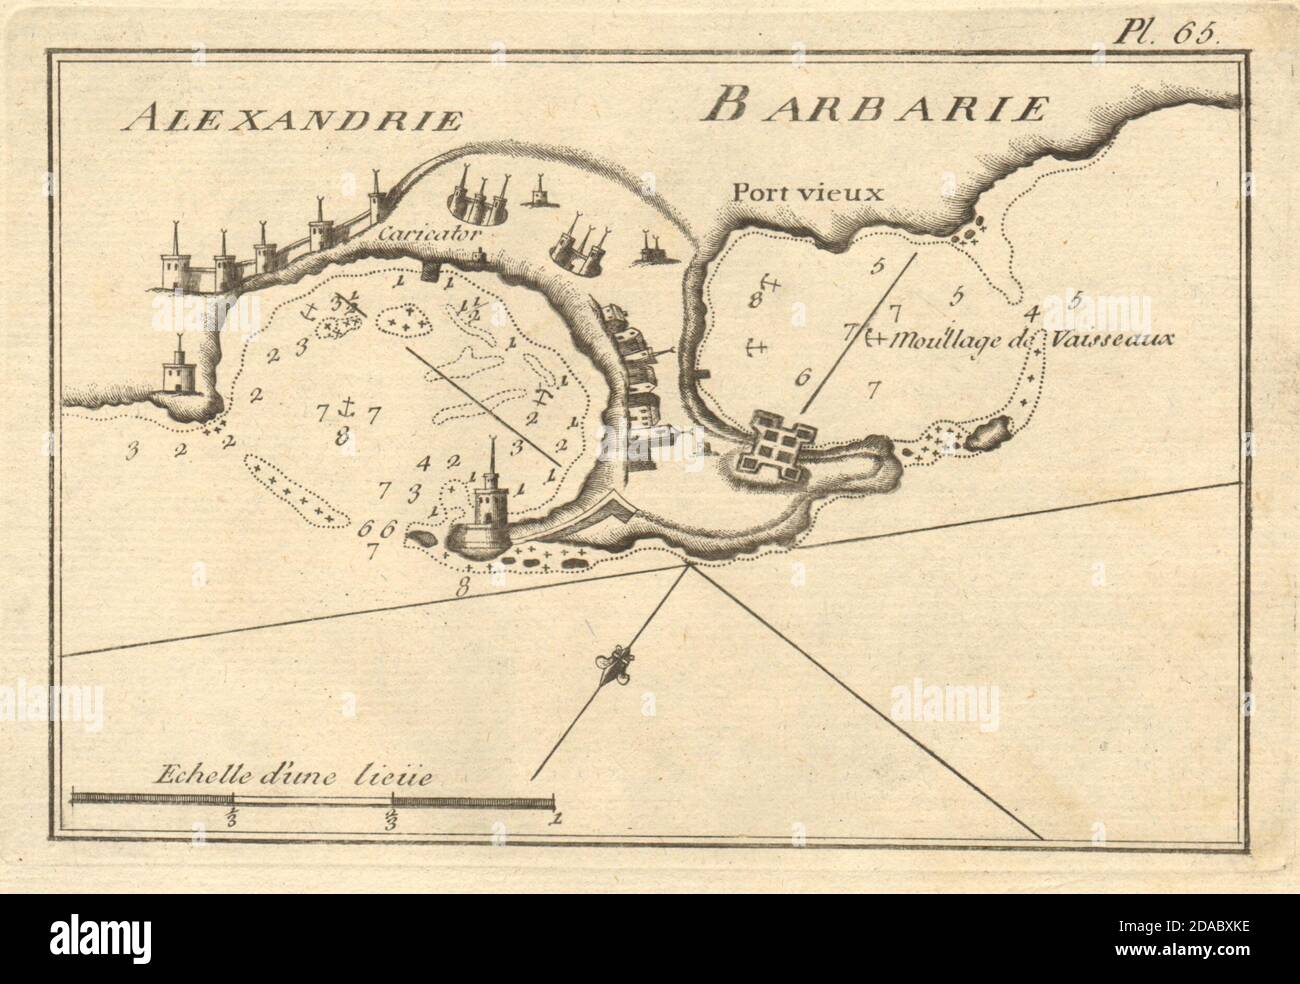 Alexandrie (barbarie). El Puerto de Alejandría. Egipto. ROUX 1804 mapa antiguo Foto de stock